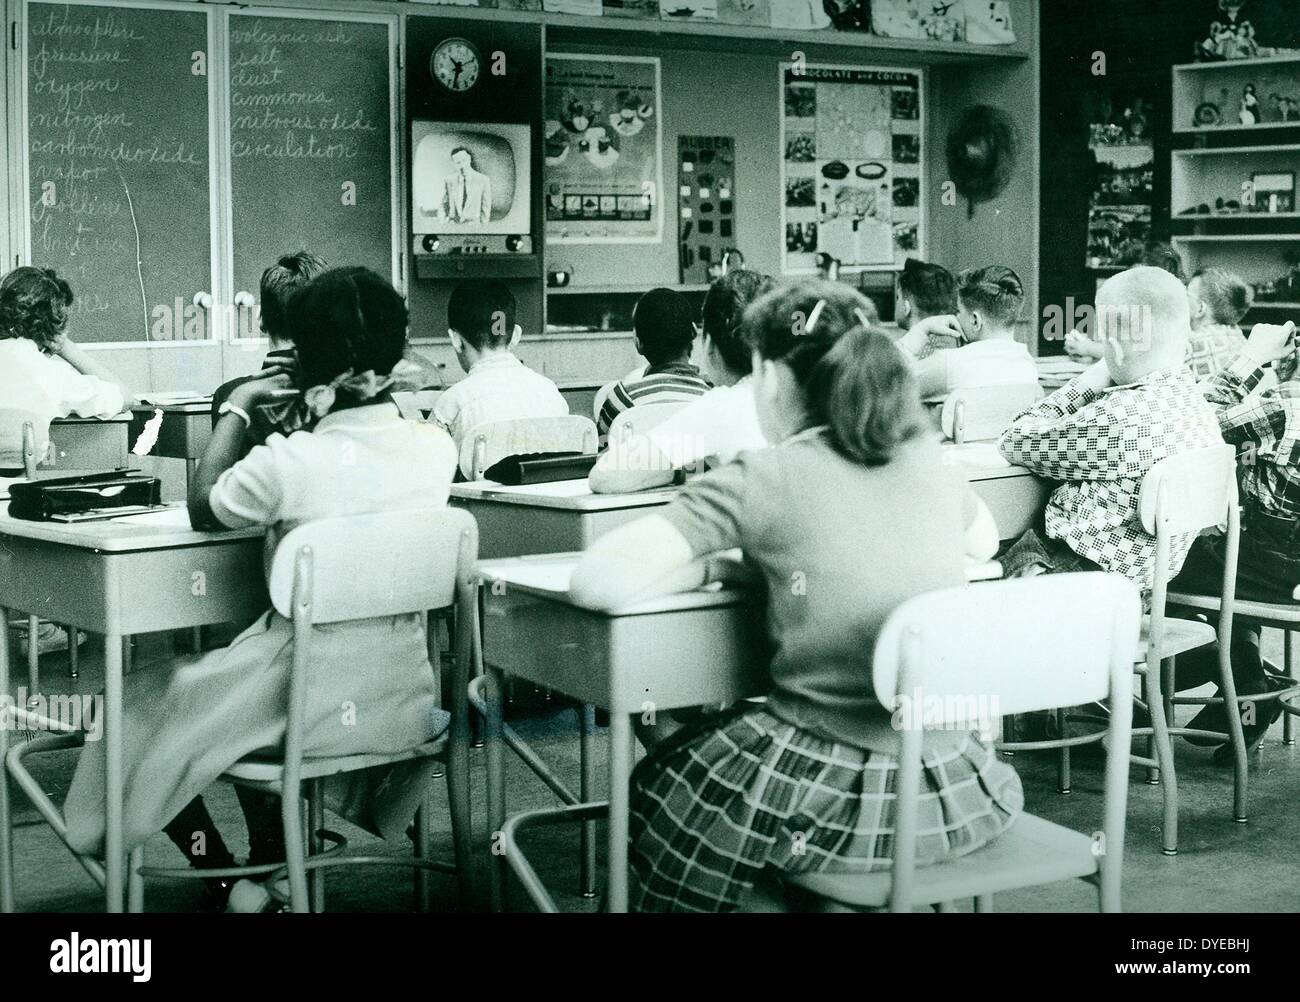 Utilisé à la télévision pour livrer des leçons dans une classe intégrée de l'école les enfants afro-américains et des blancs. Circa 1967 Banque D'Images